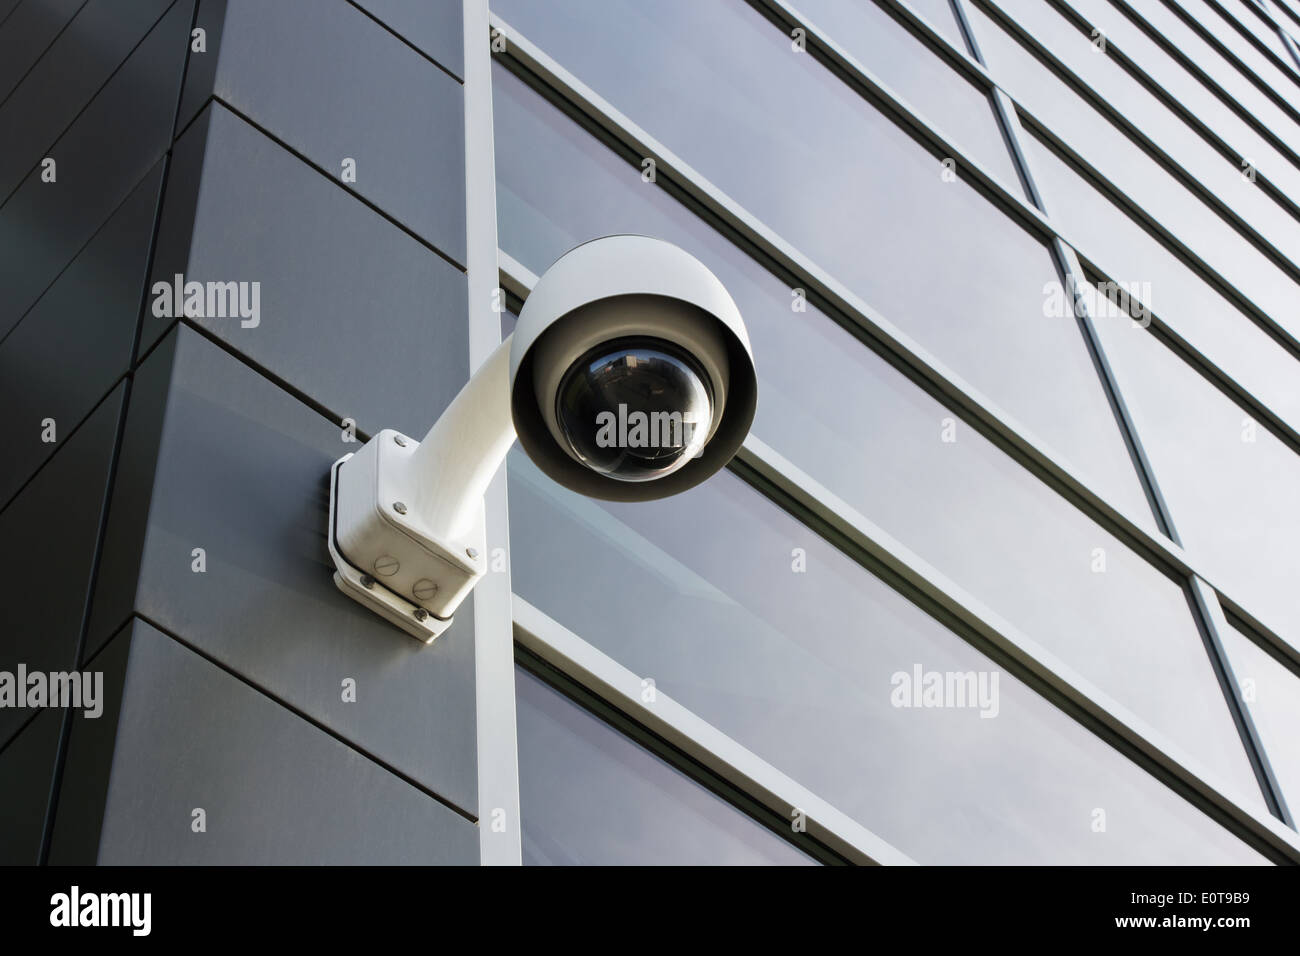 Security camera on modern building facade Stock Photo